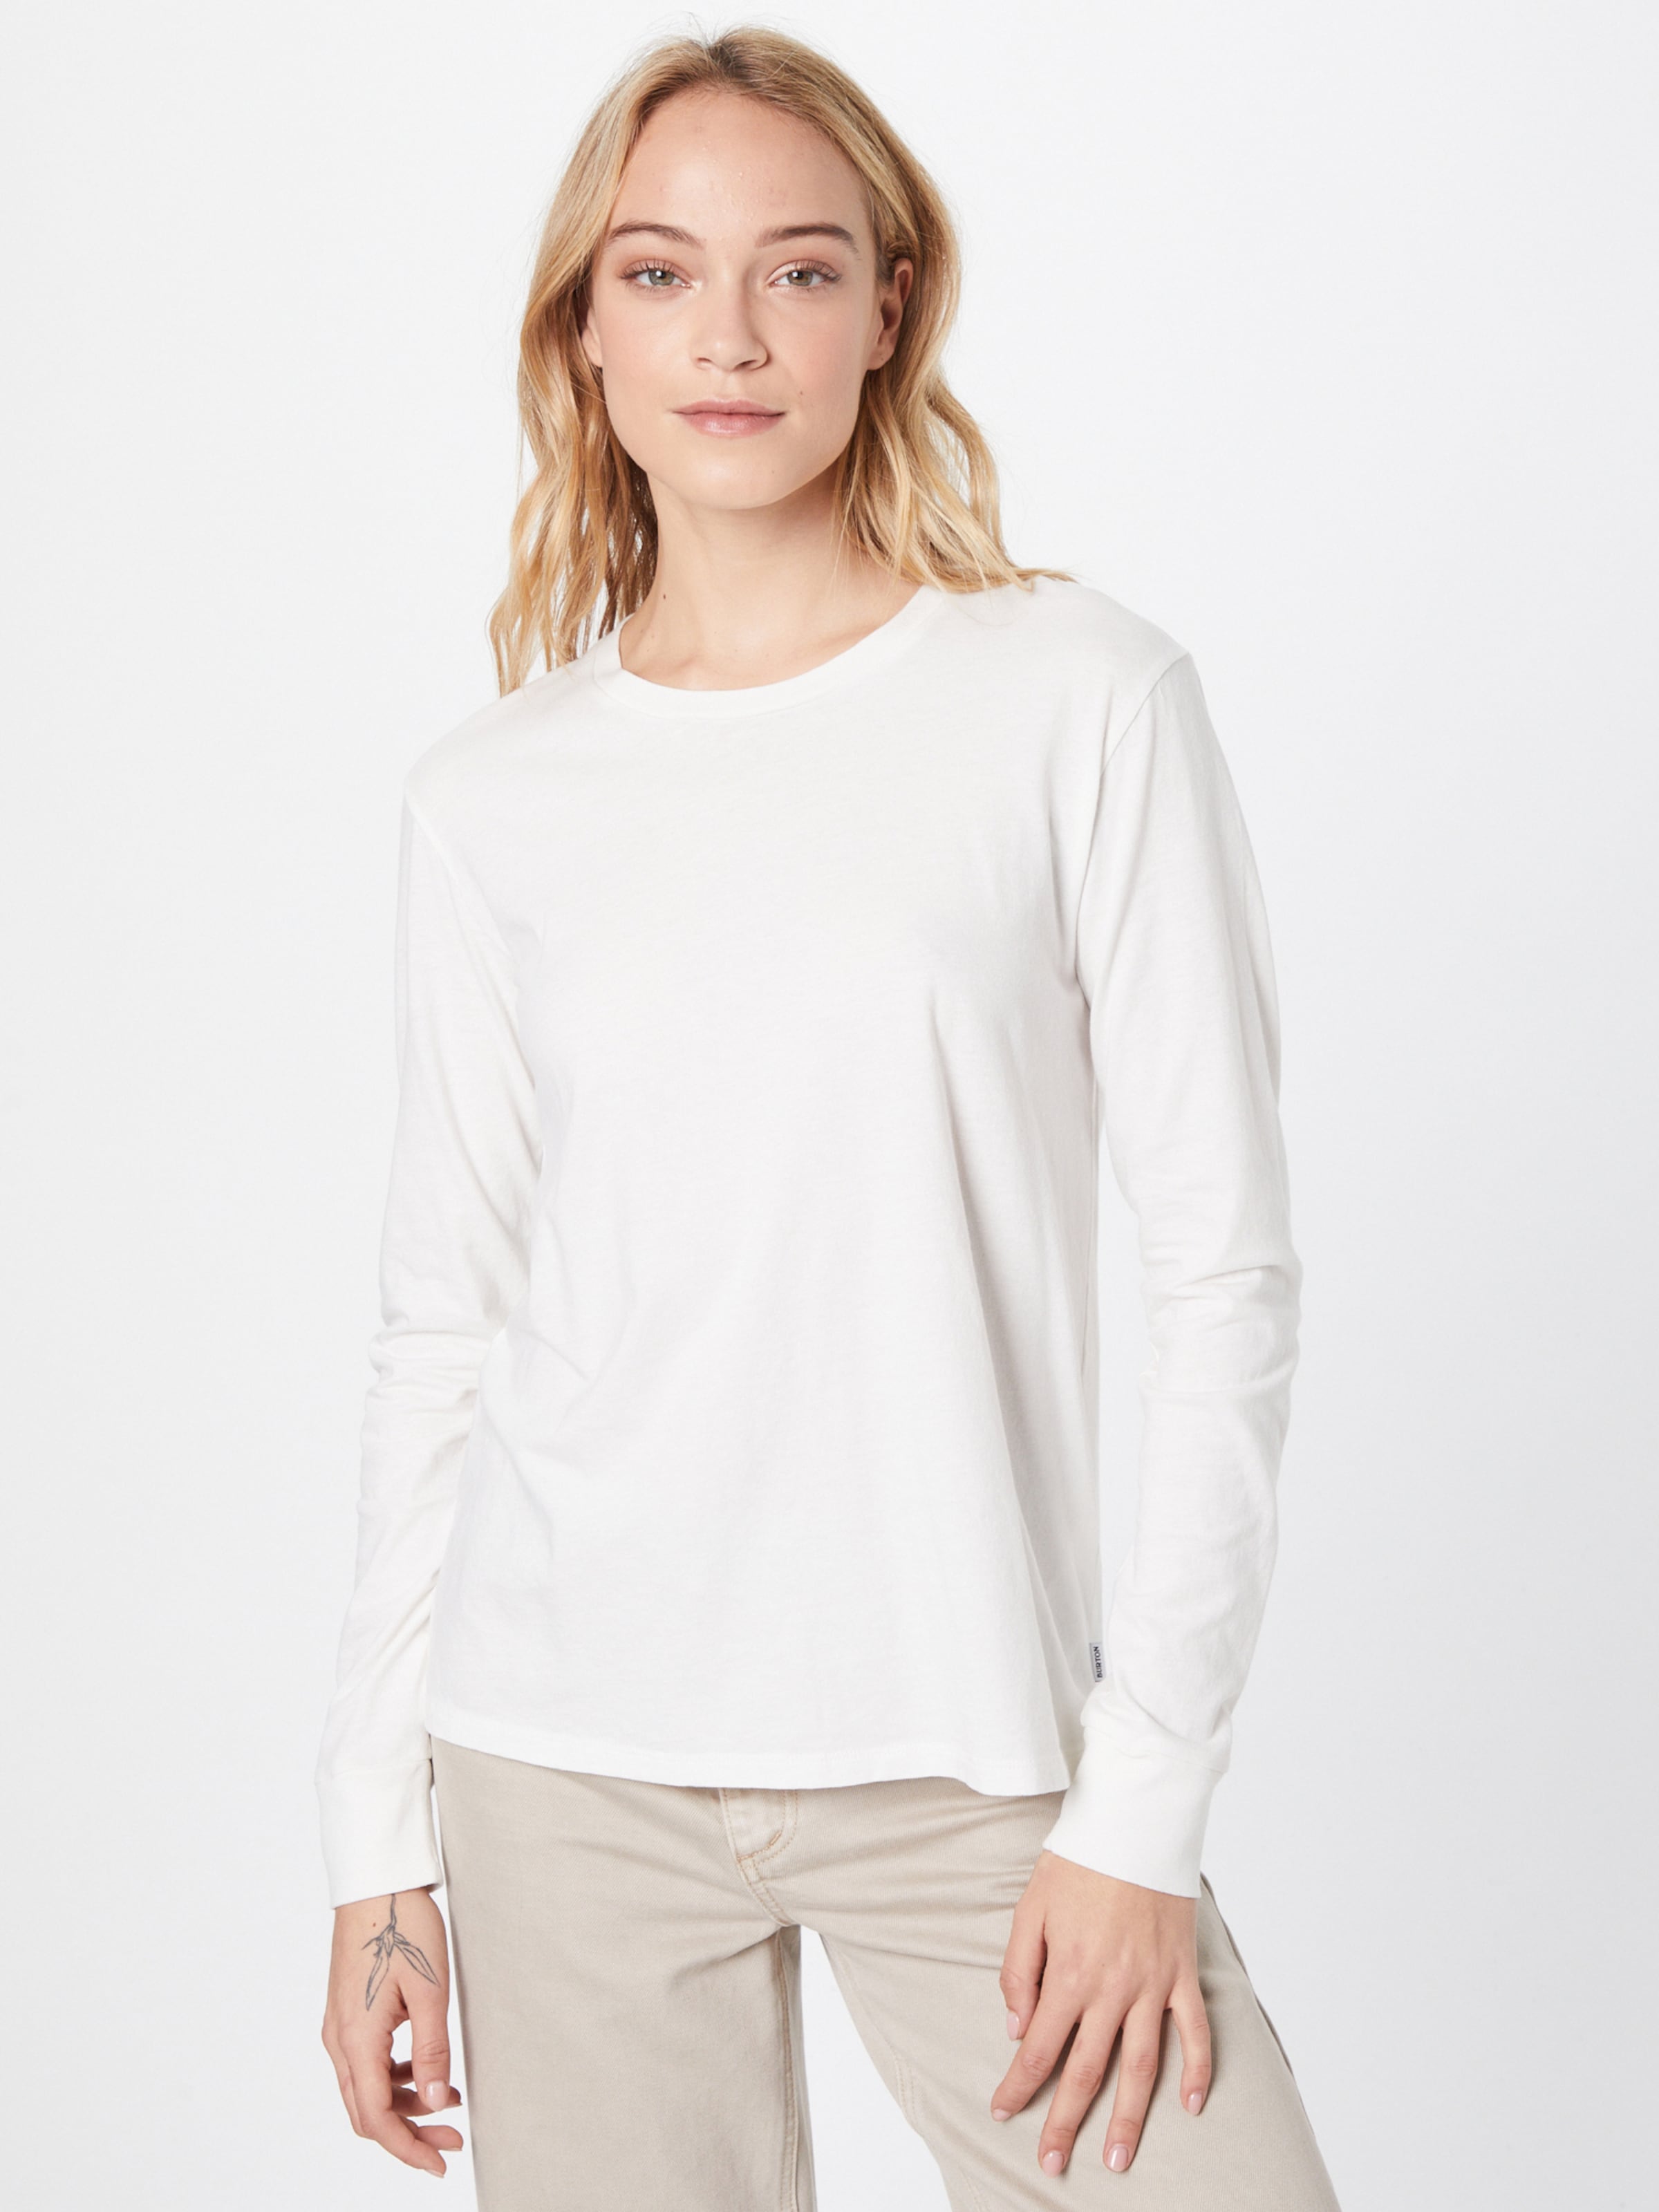 Frauen Shirts & Tops BURTON Shirt in Weiß - XK63960